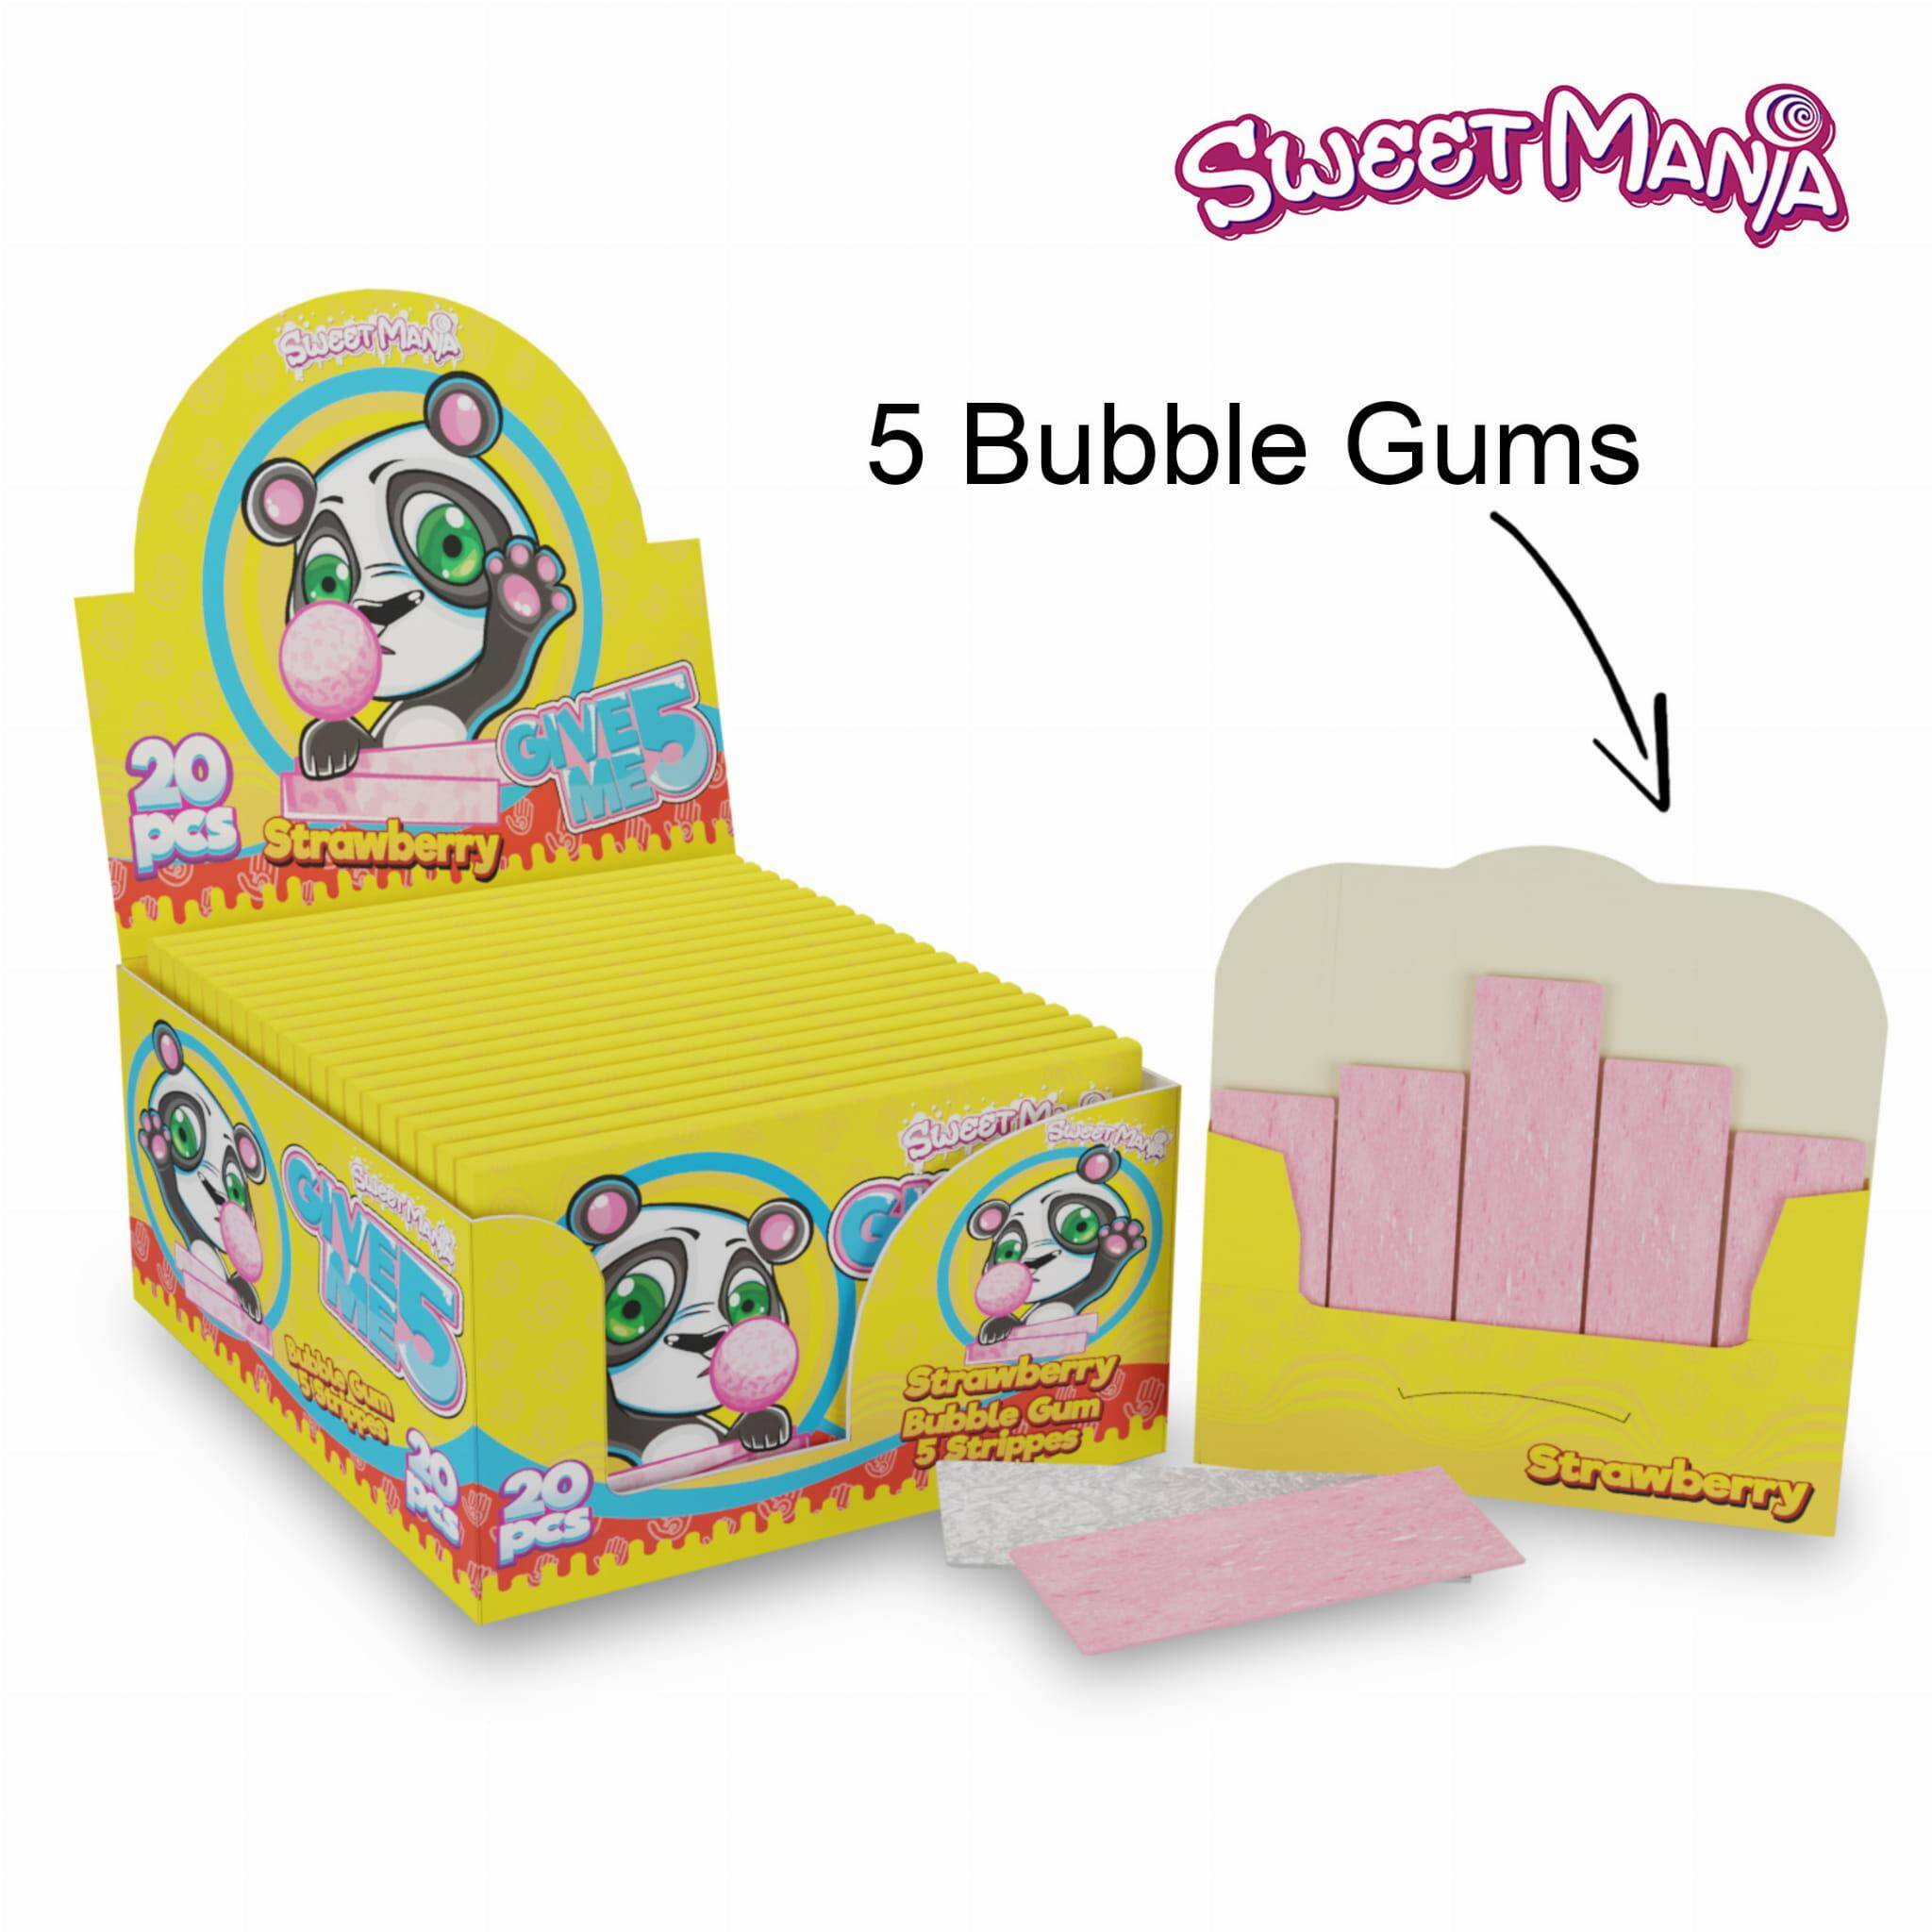 Guma Give me 5 Bubble Gum 11g /20/N